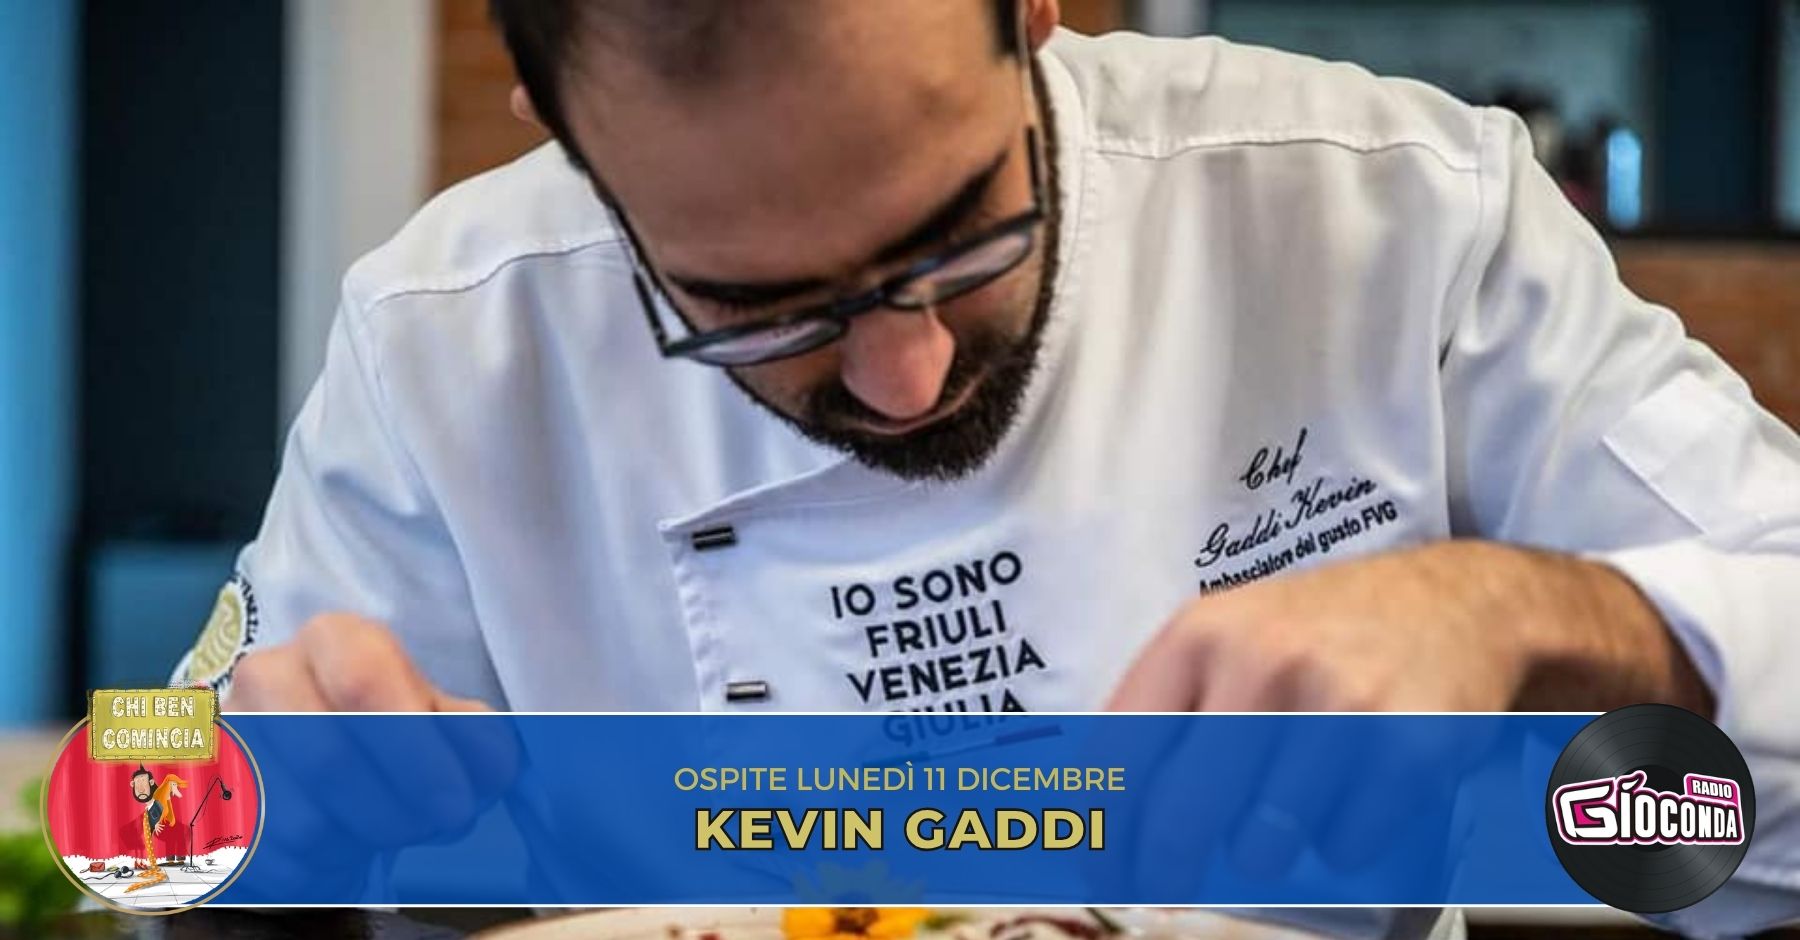 Lo chef Kevin Gaddi è l'ospite della nuova puntata di “Chi ben comincia” in onda lunedì 11 dicembre alle 18.00.